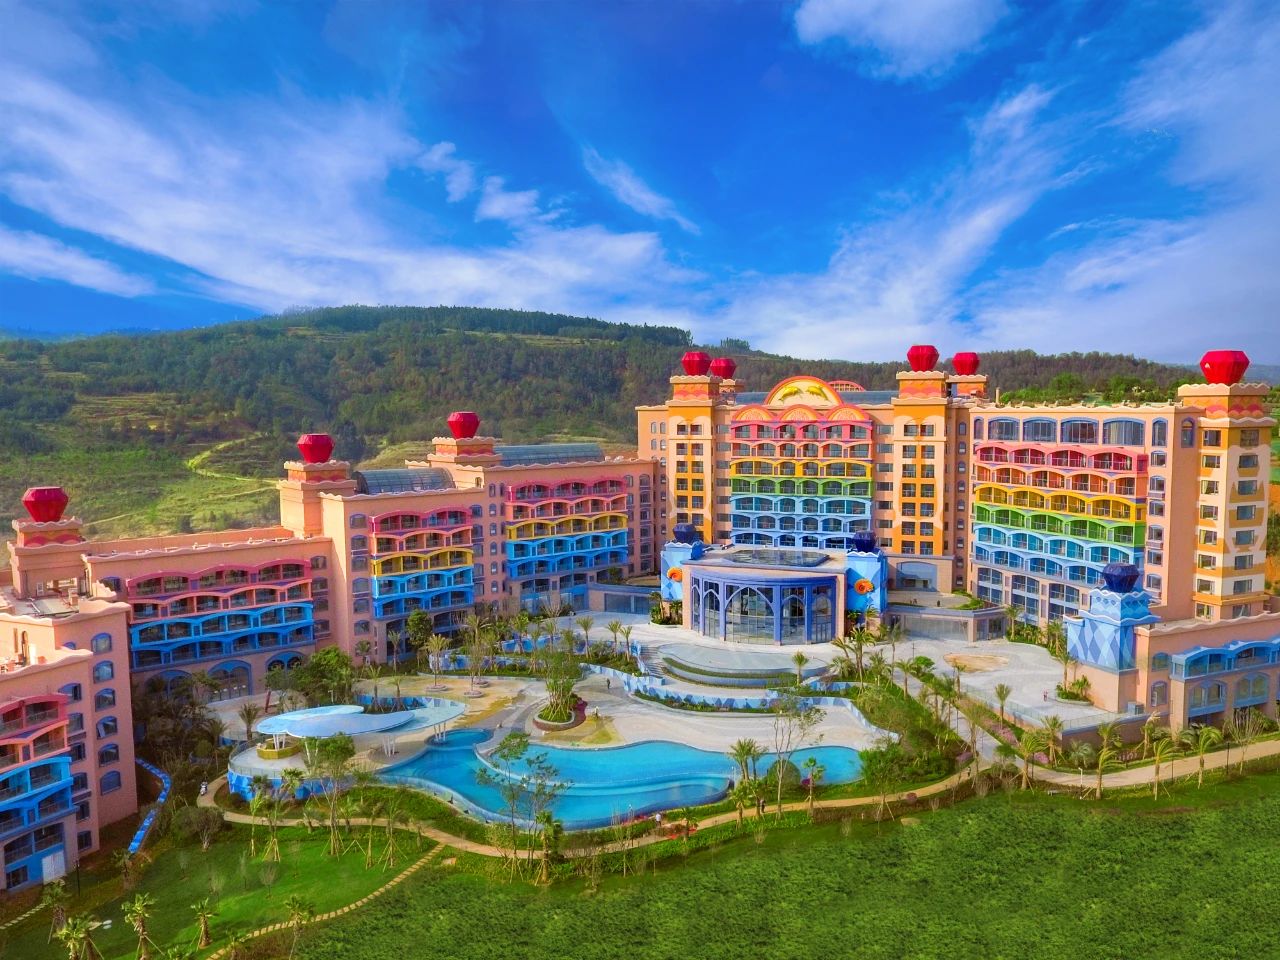 云南成为疫情后旅游目的地第一名,抚仙湖海豚湾酒店5月30日开业